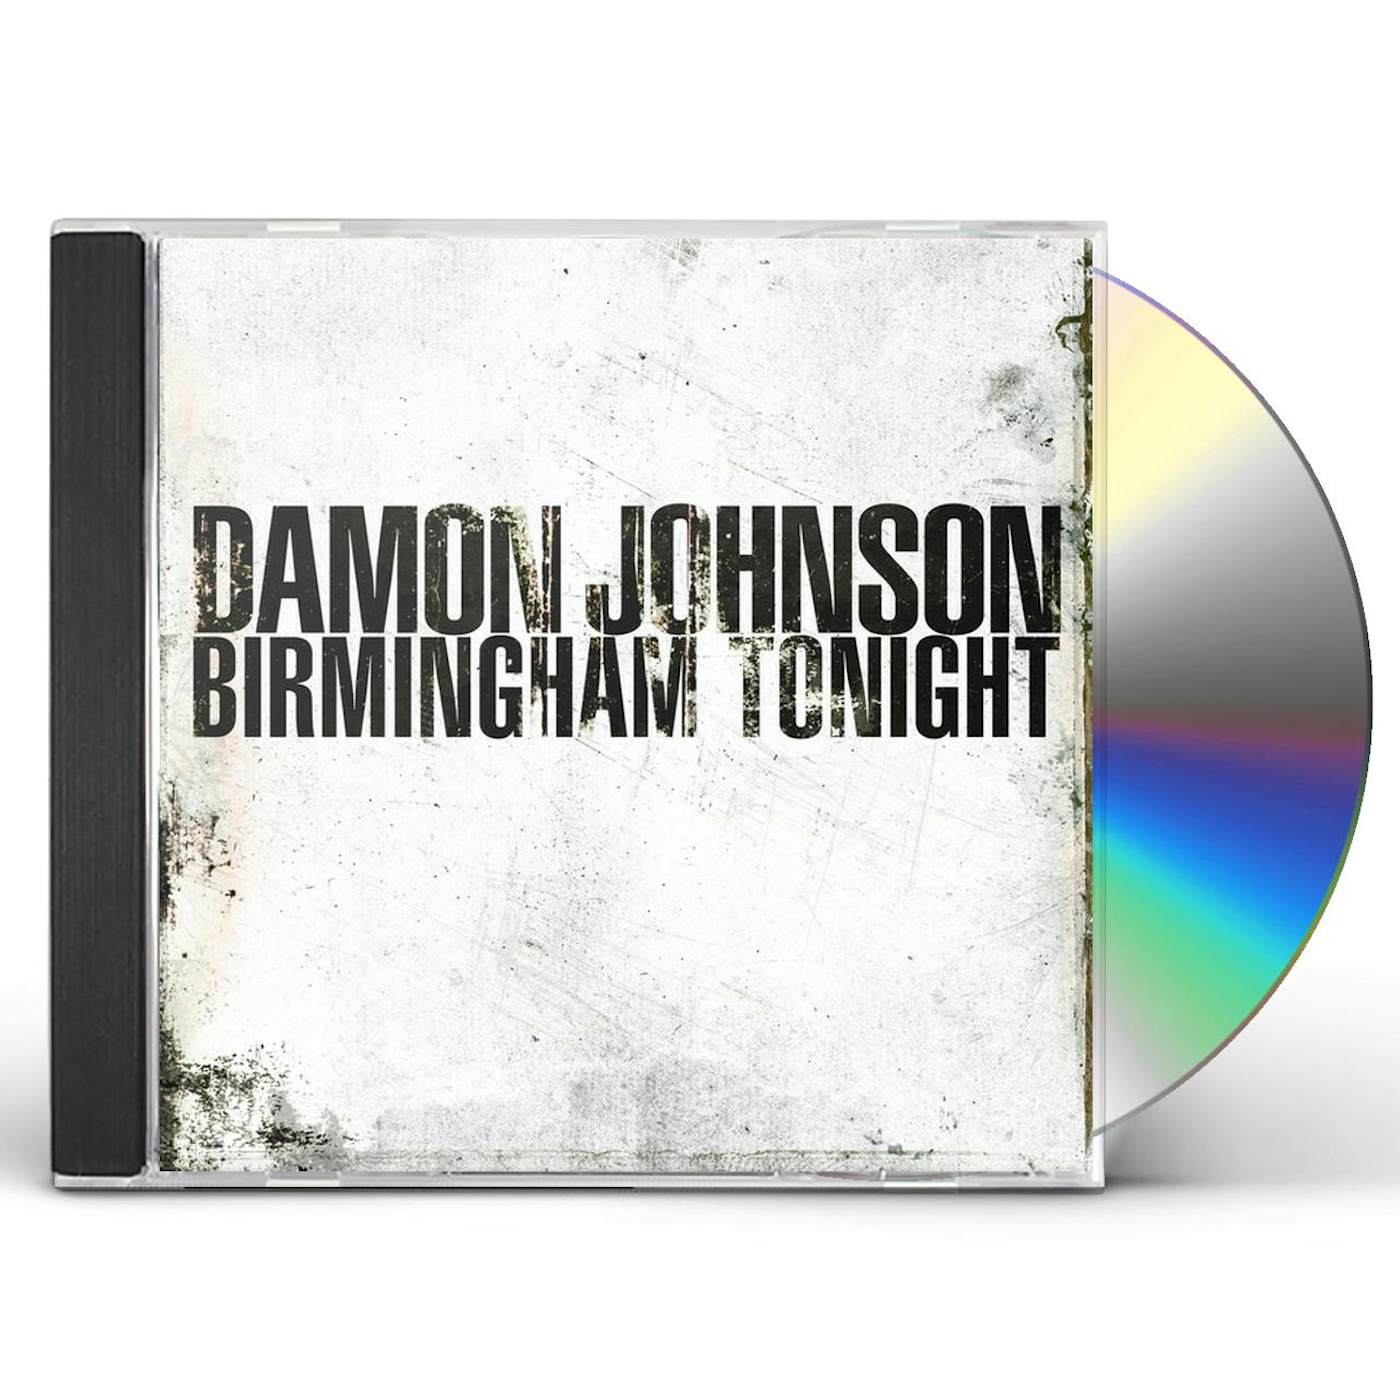 Damon Johnson BIRMINGHAM TONIGHT CD